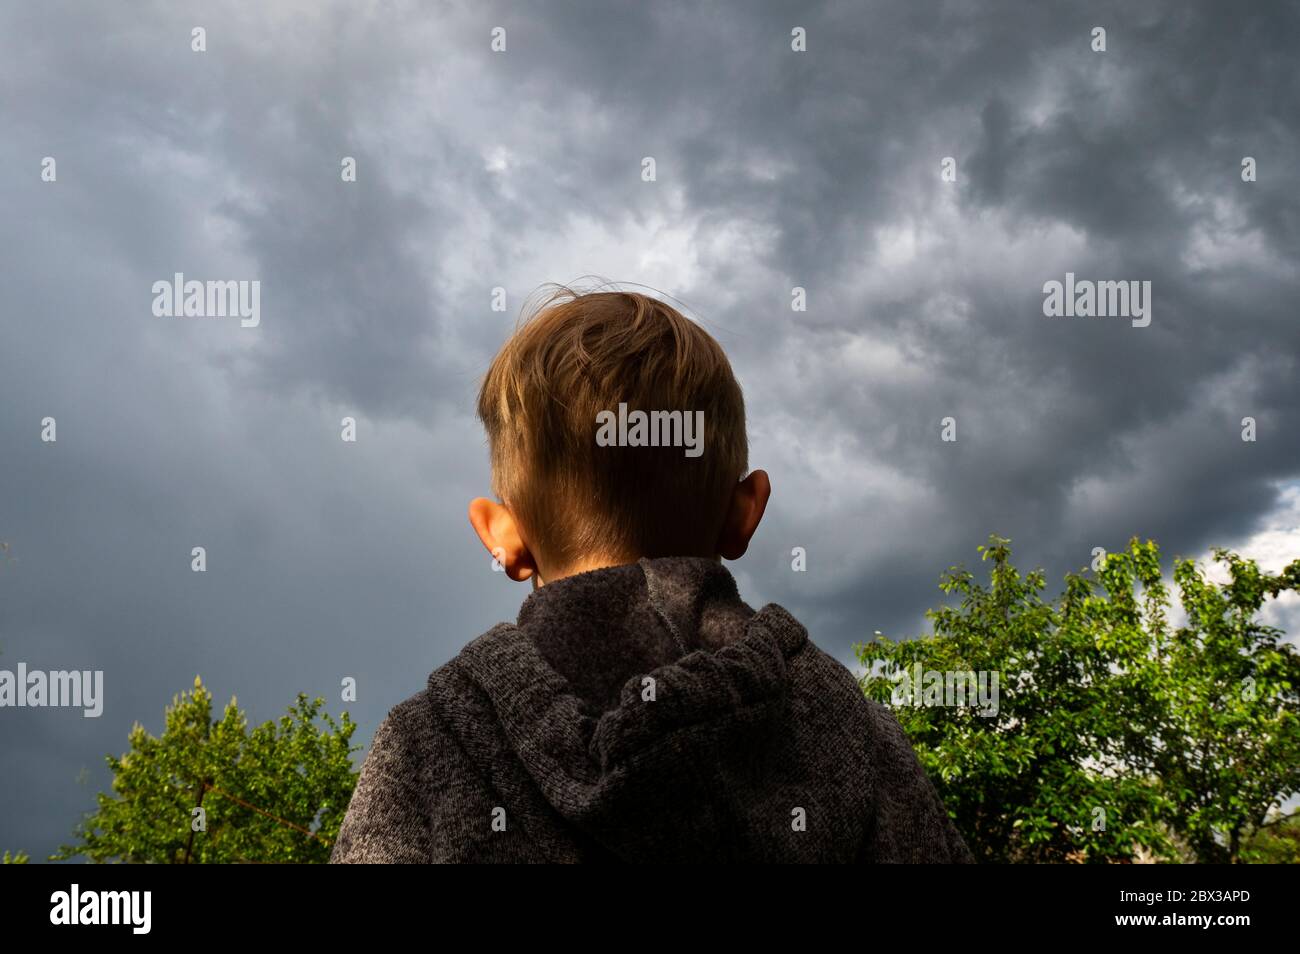 Der kleine blonde Kaukasusjunge in einer grauen Jacke mit Kapuze sieht einen stürmischen Himmel über dem Garten an Stockfoto